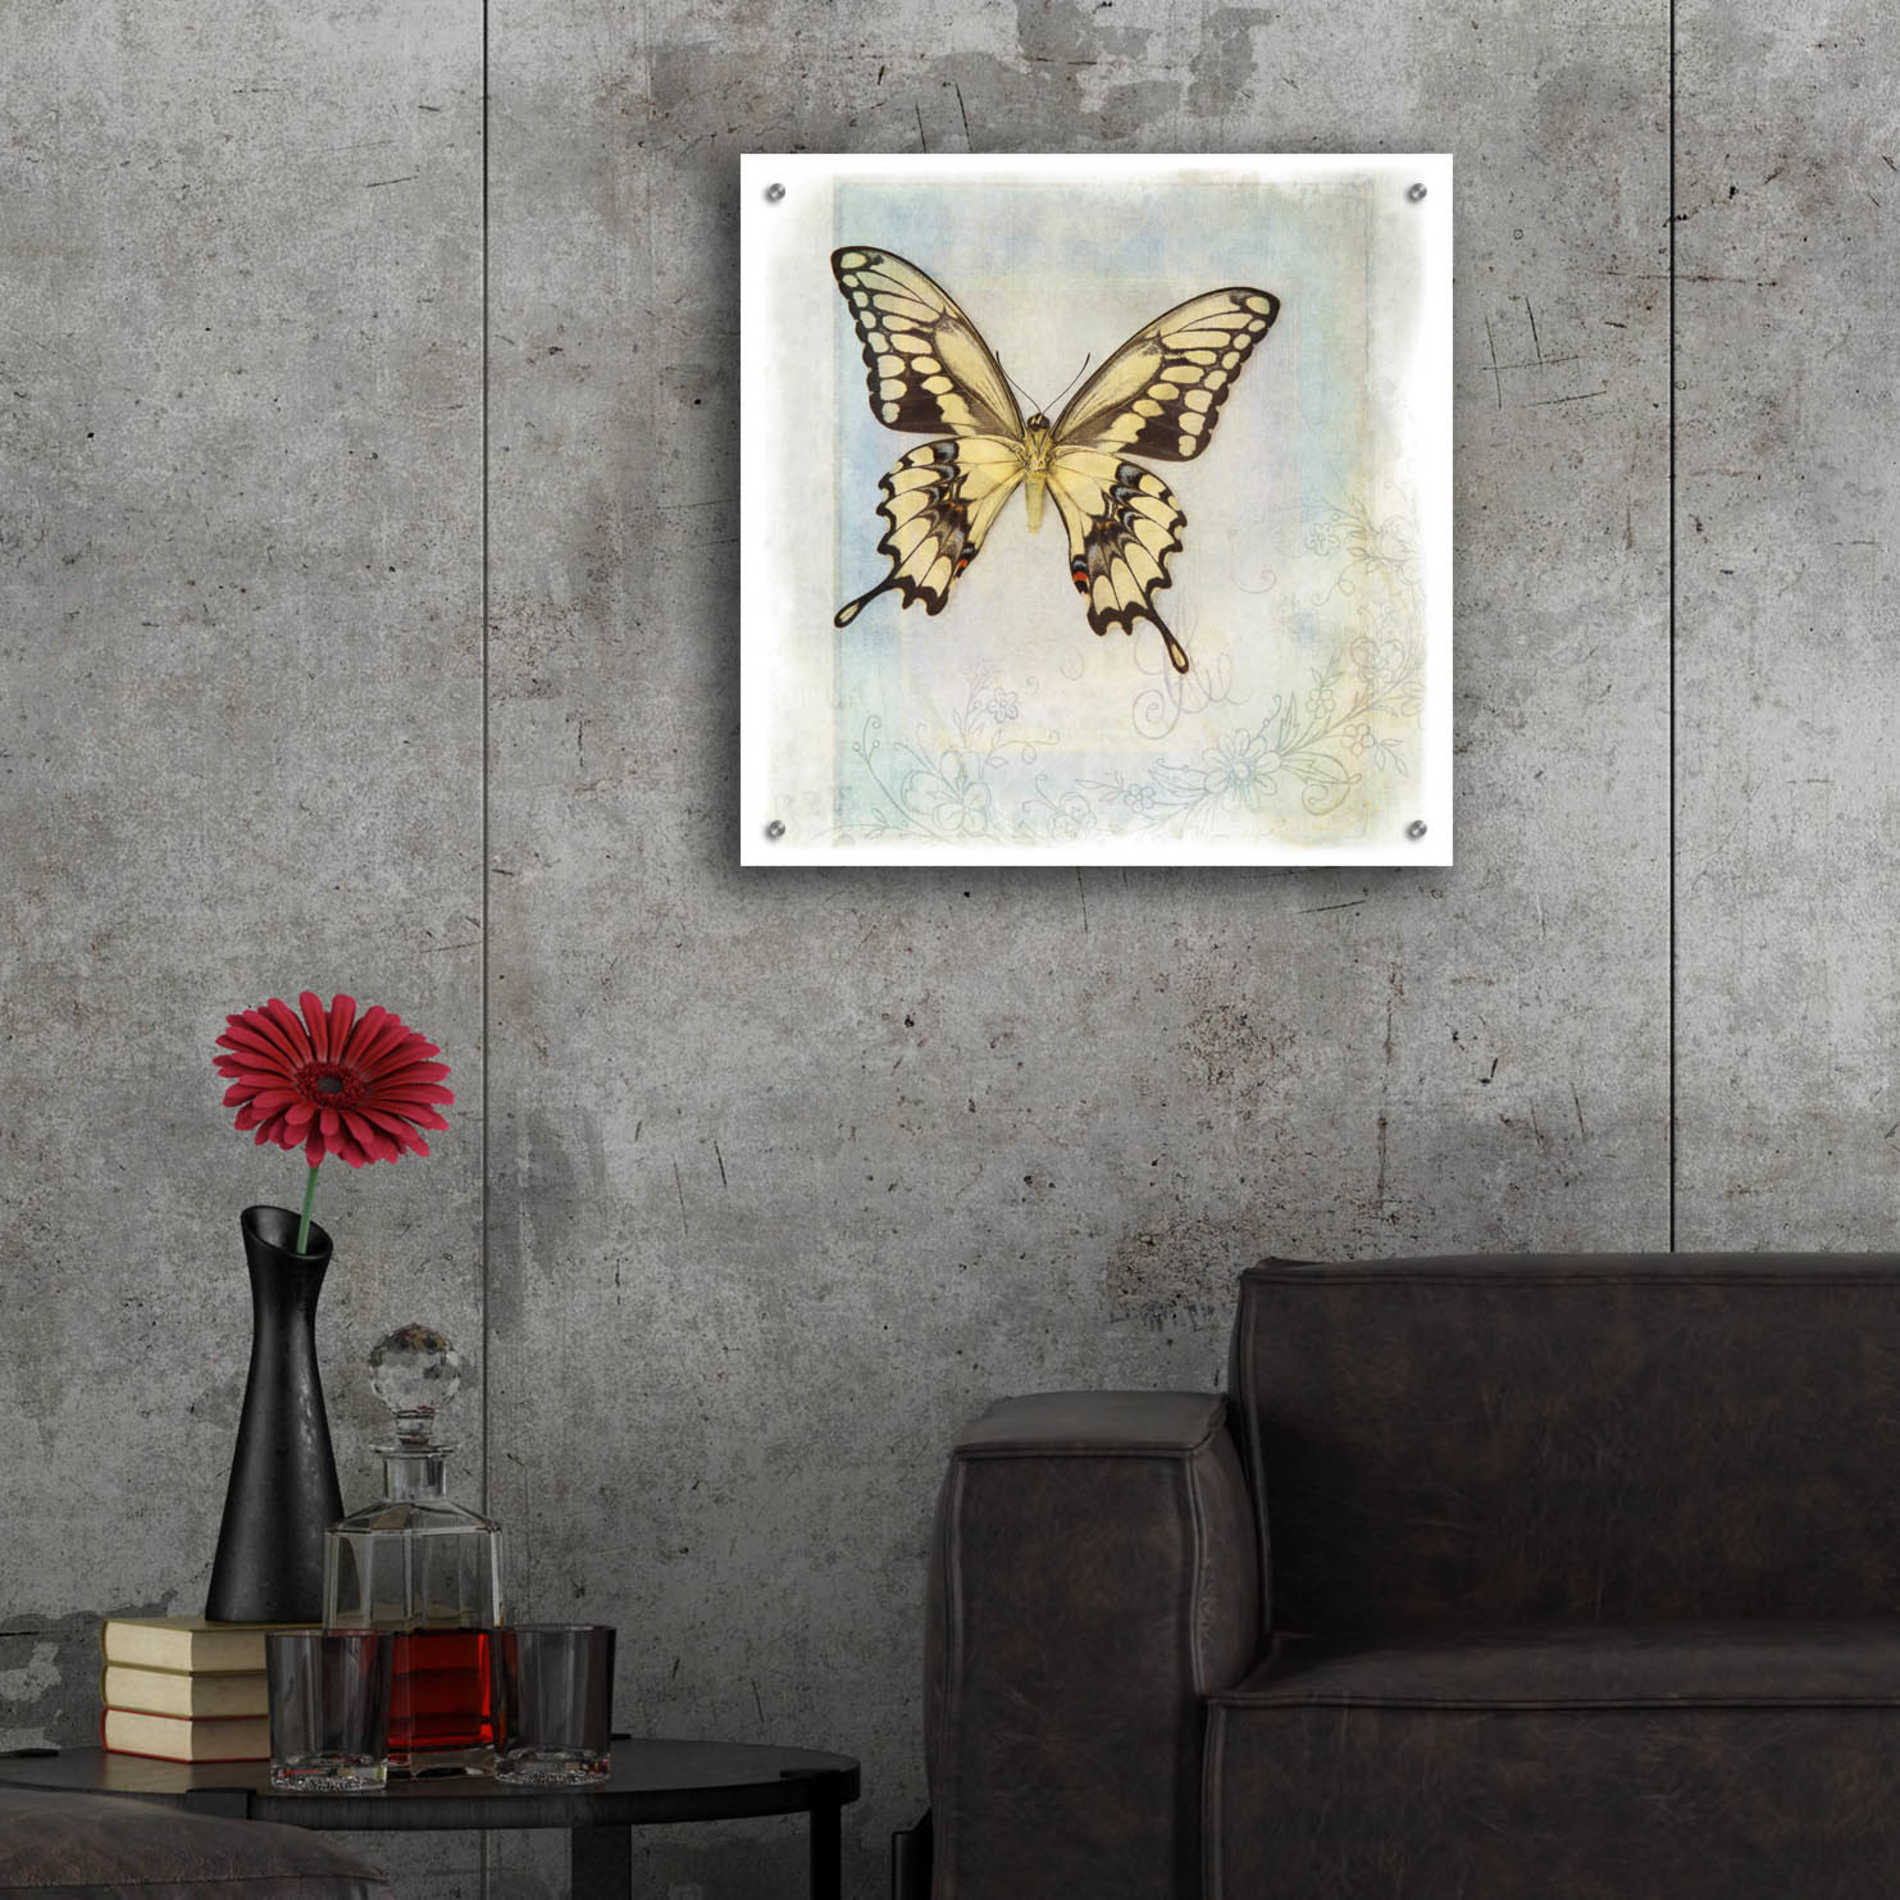 Epic Art 'Floating Butterfly V' by Debra Van Swearingen, Acrylic Glass Wall Art,24x24